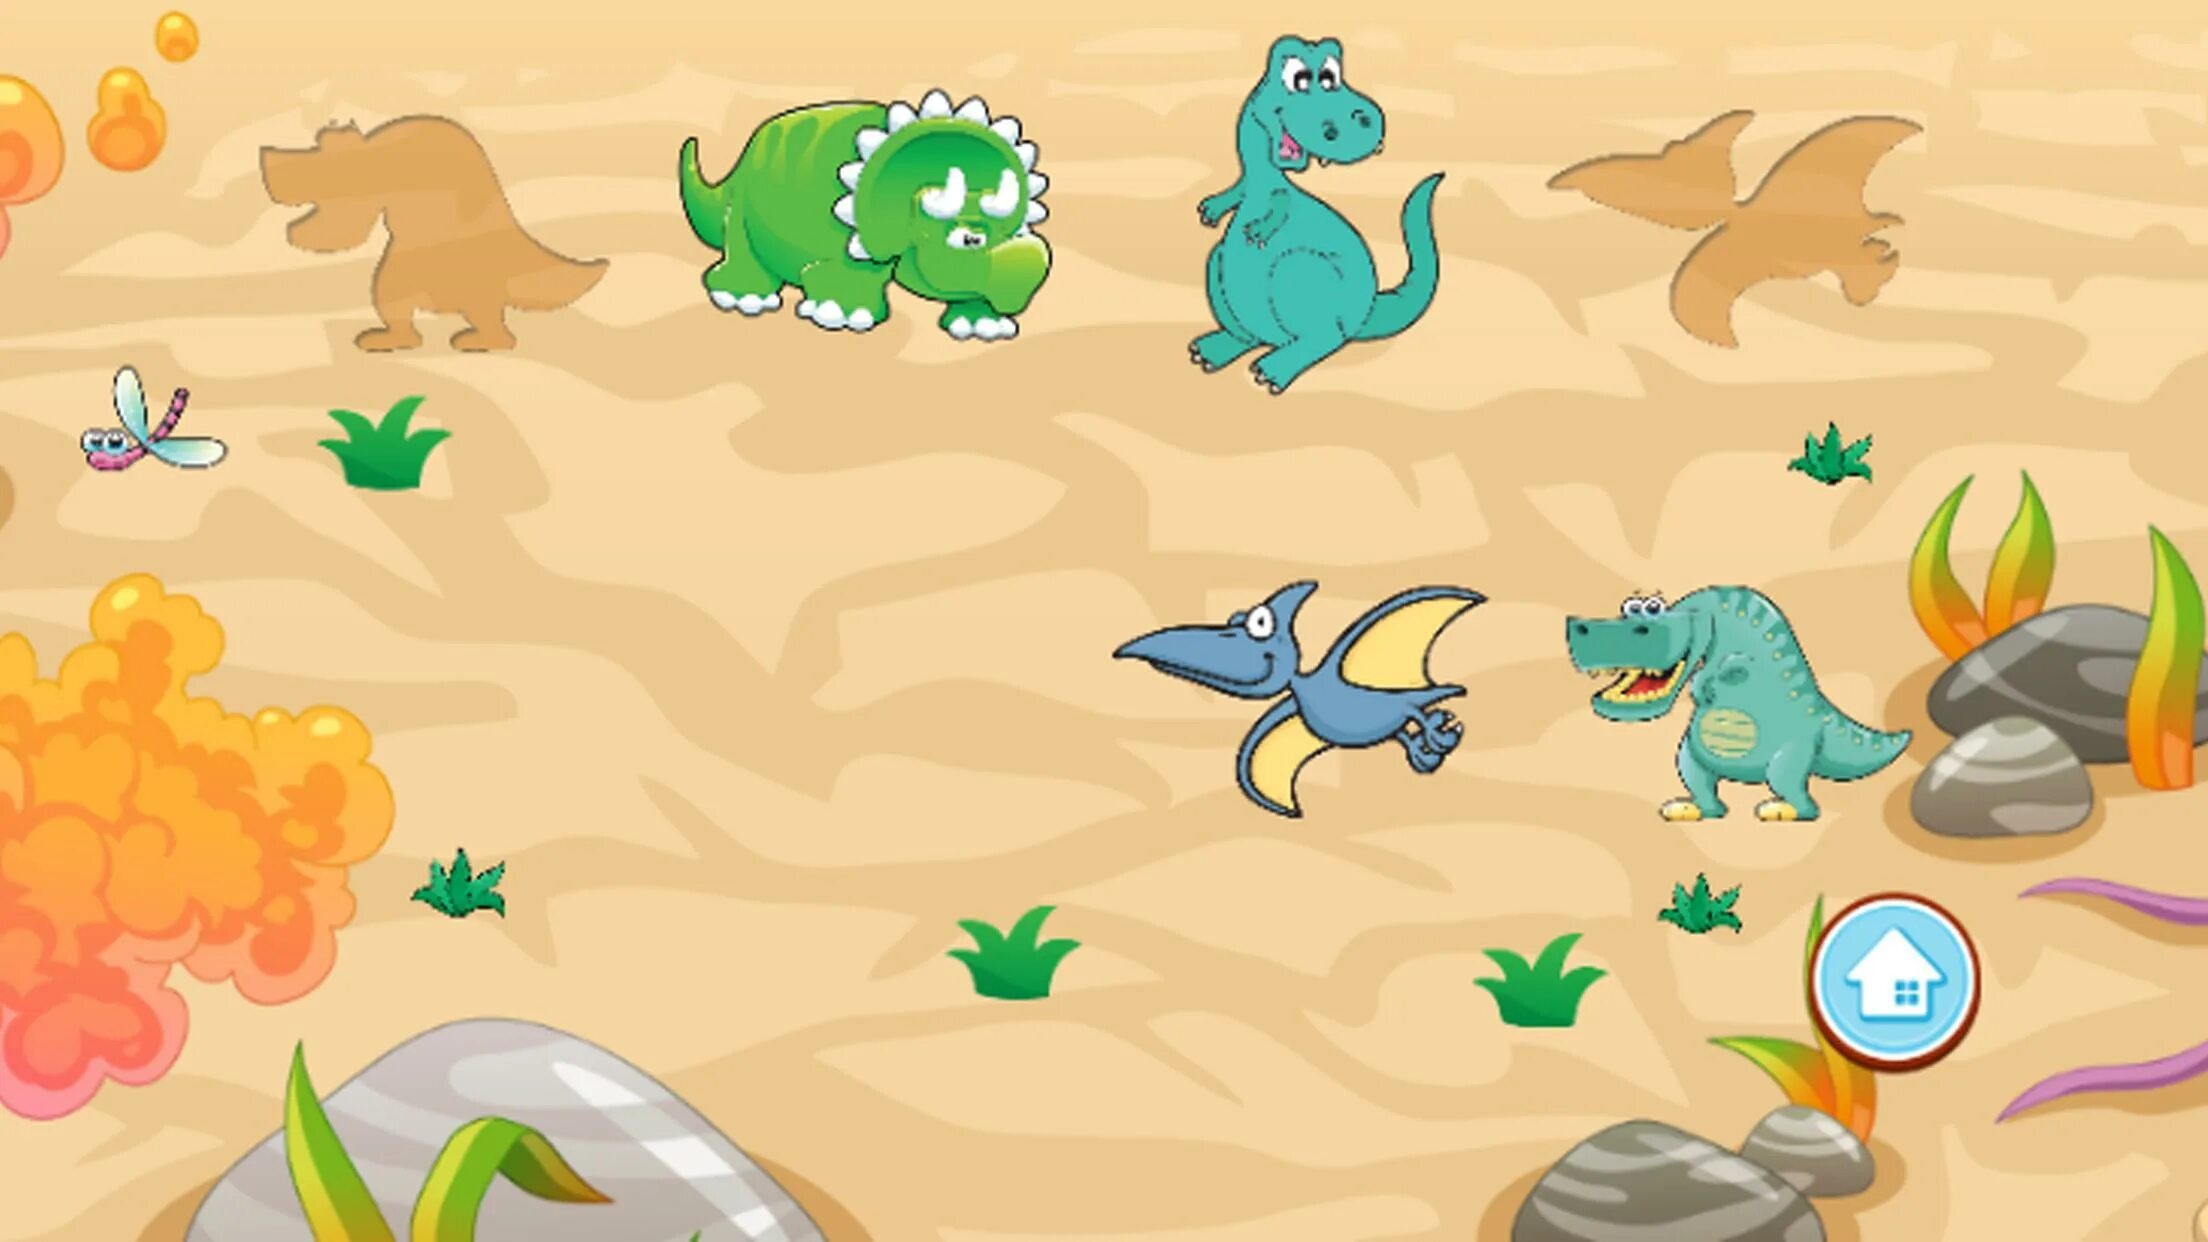 Игра Динозаврики игра Динозаврики игра Динозаврики игра Динозаврики. Развивающие игры динозавры. Головоломки с динозаврами. Игры с динозавриками для малышей.